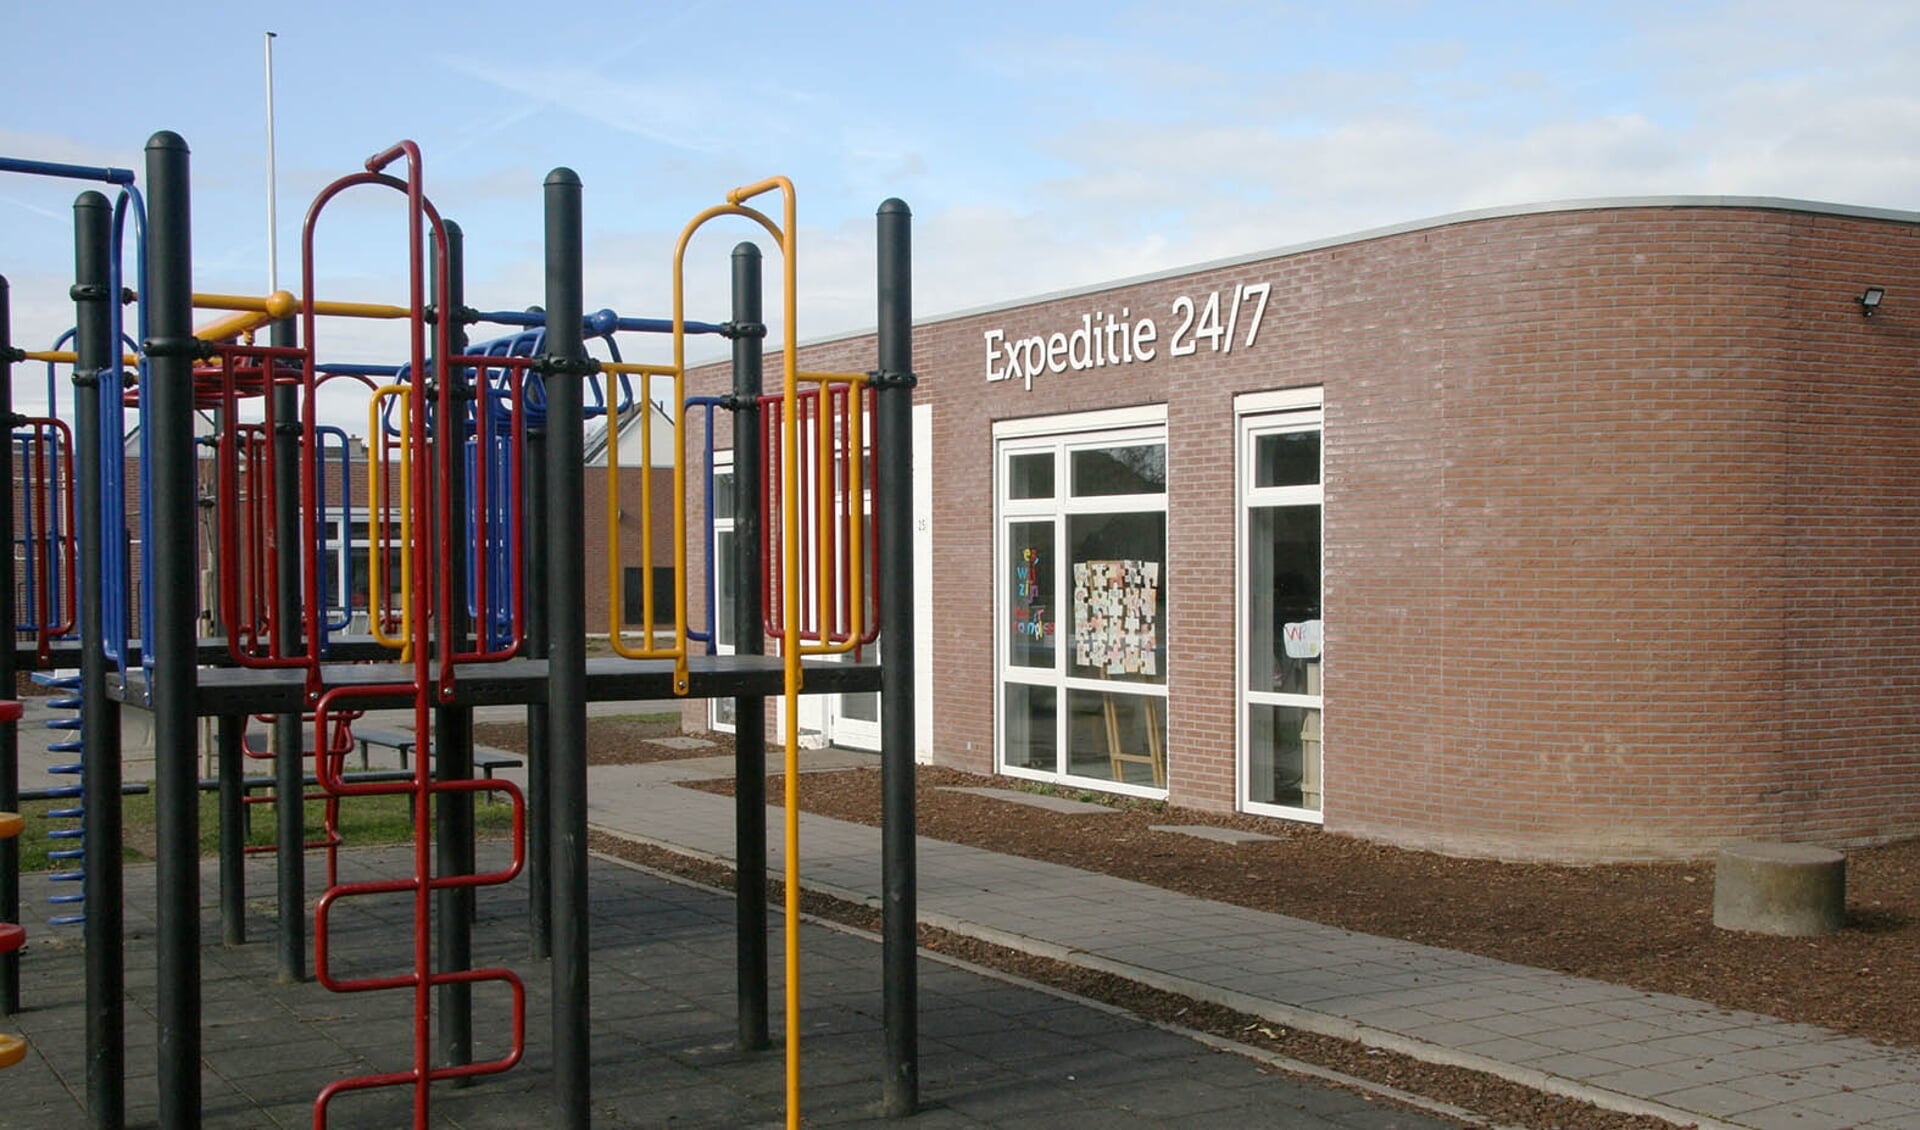 Basisschool Expeditie 24/7 aan de Meengatstraat in Brummen.